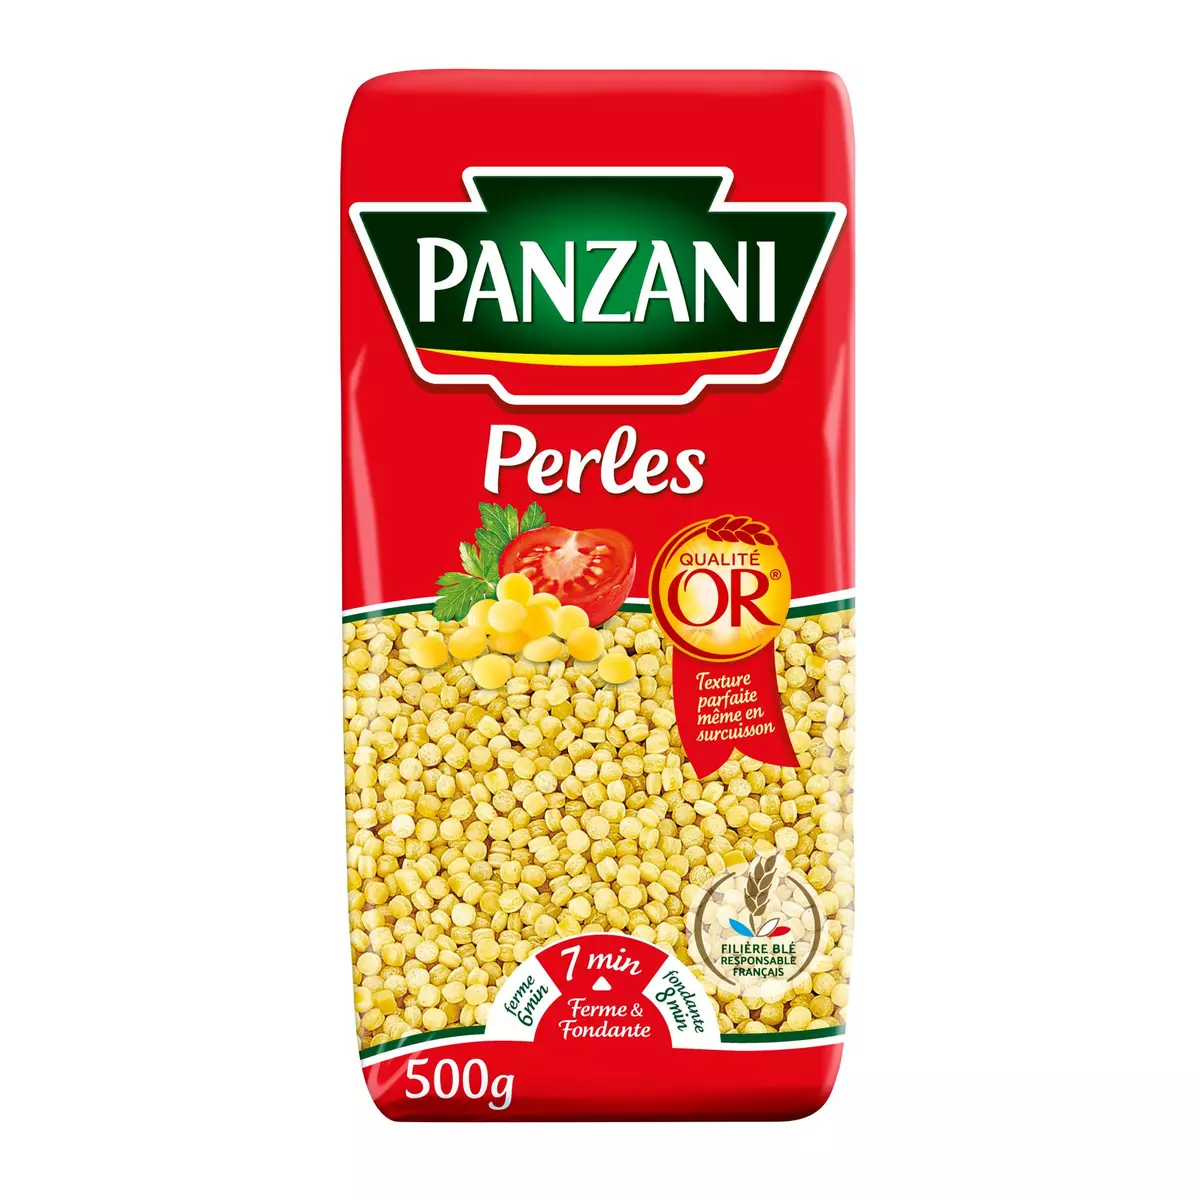 PANZANI Perles qualité or filière blé responsable 500g